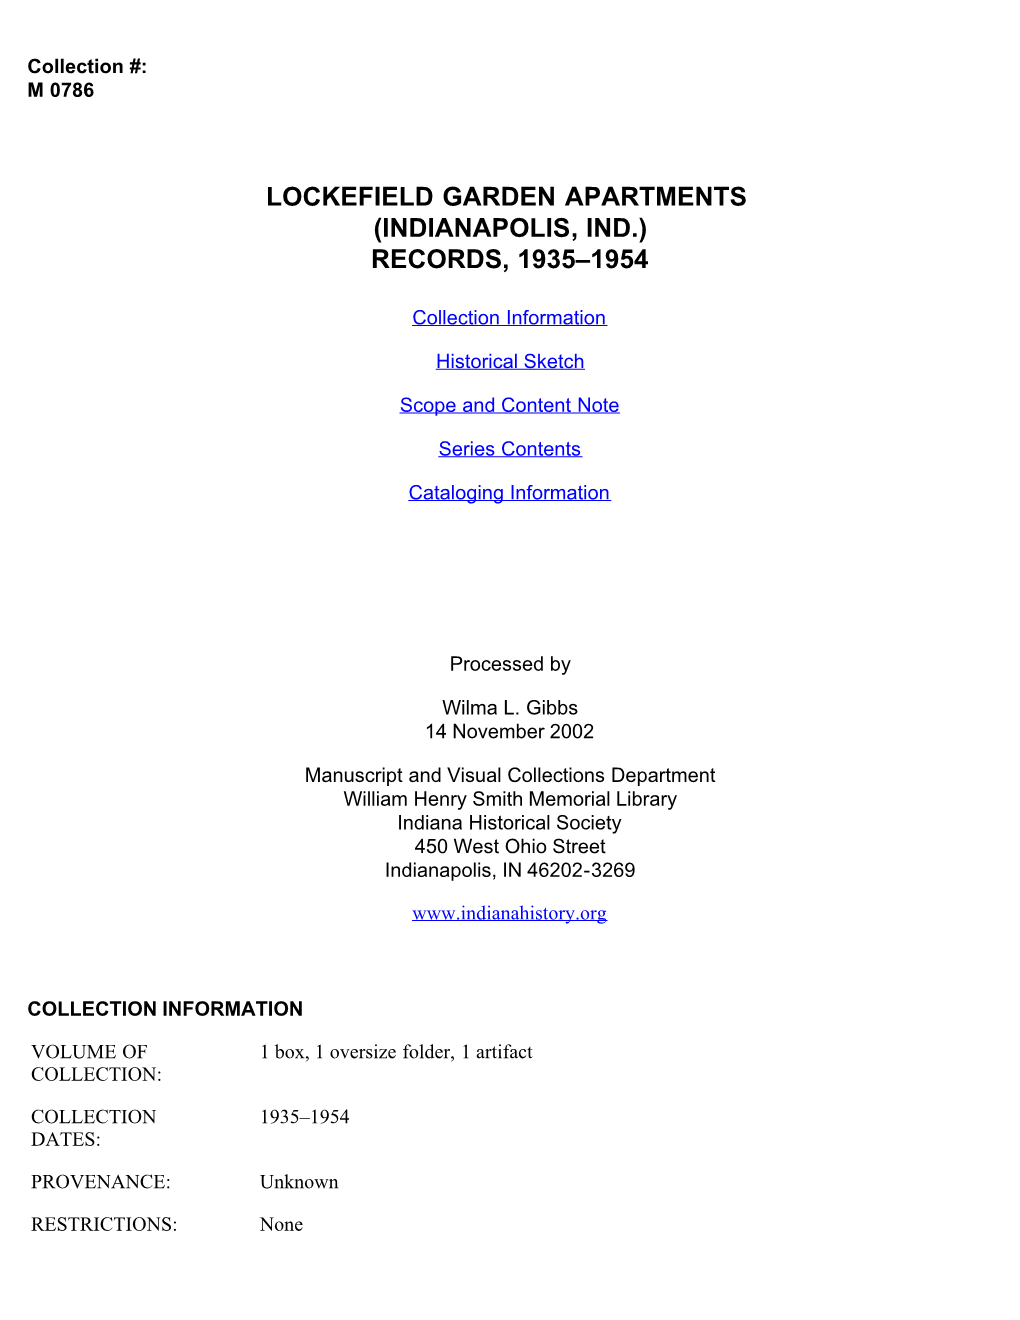 Lockefield Garden Apartments (Indianapolis, Ind.) Records, 1935–1954